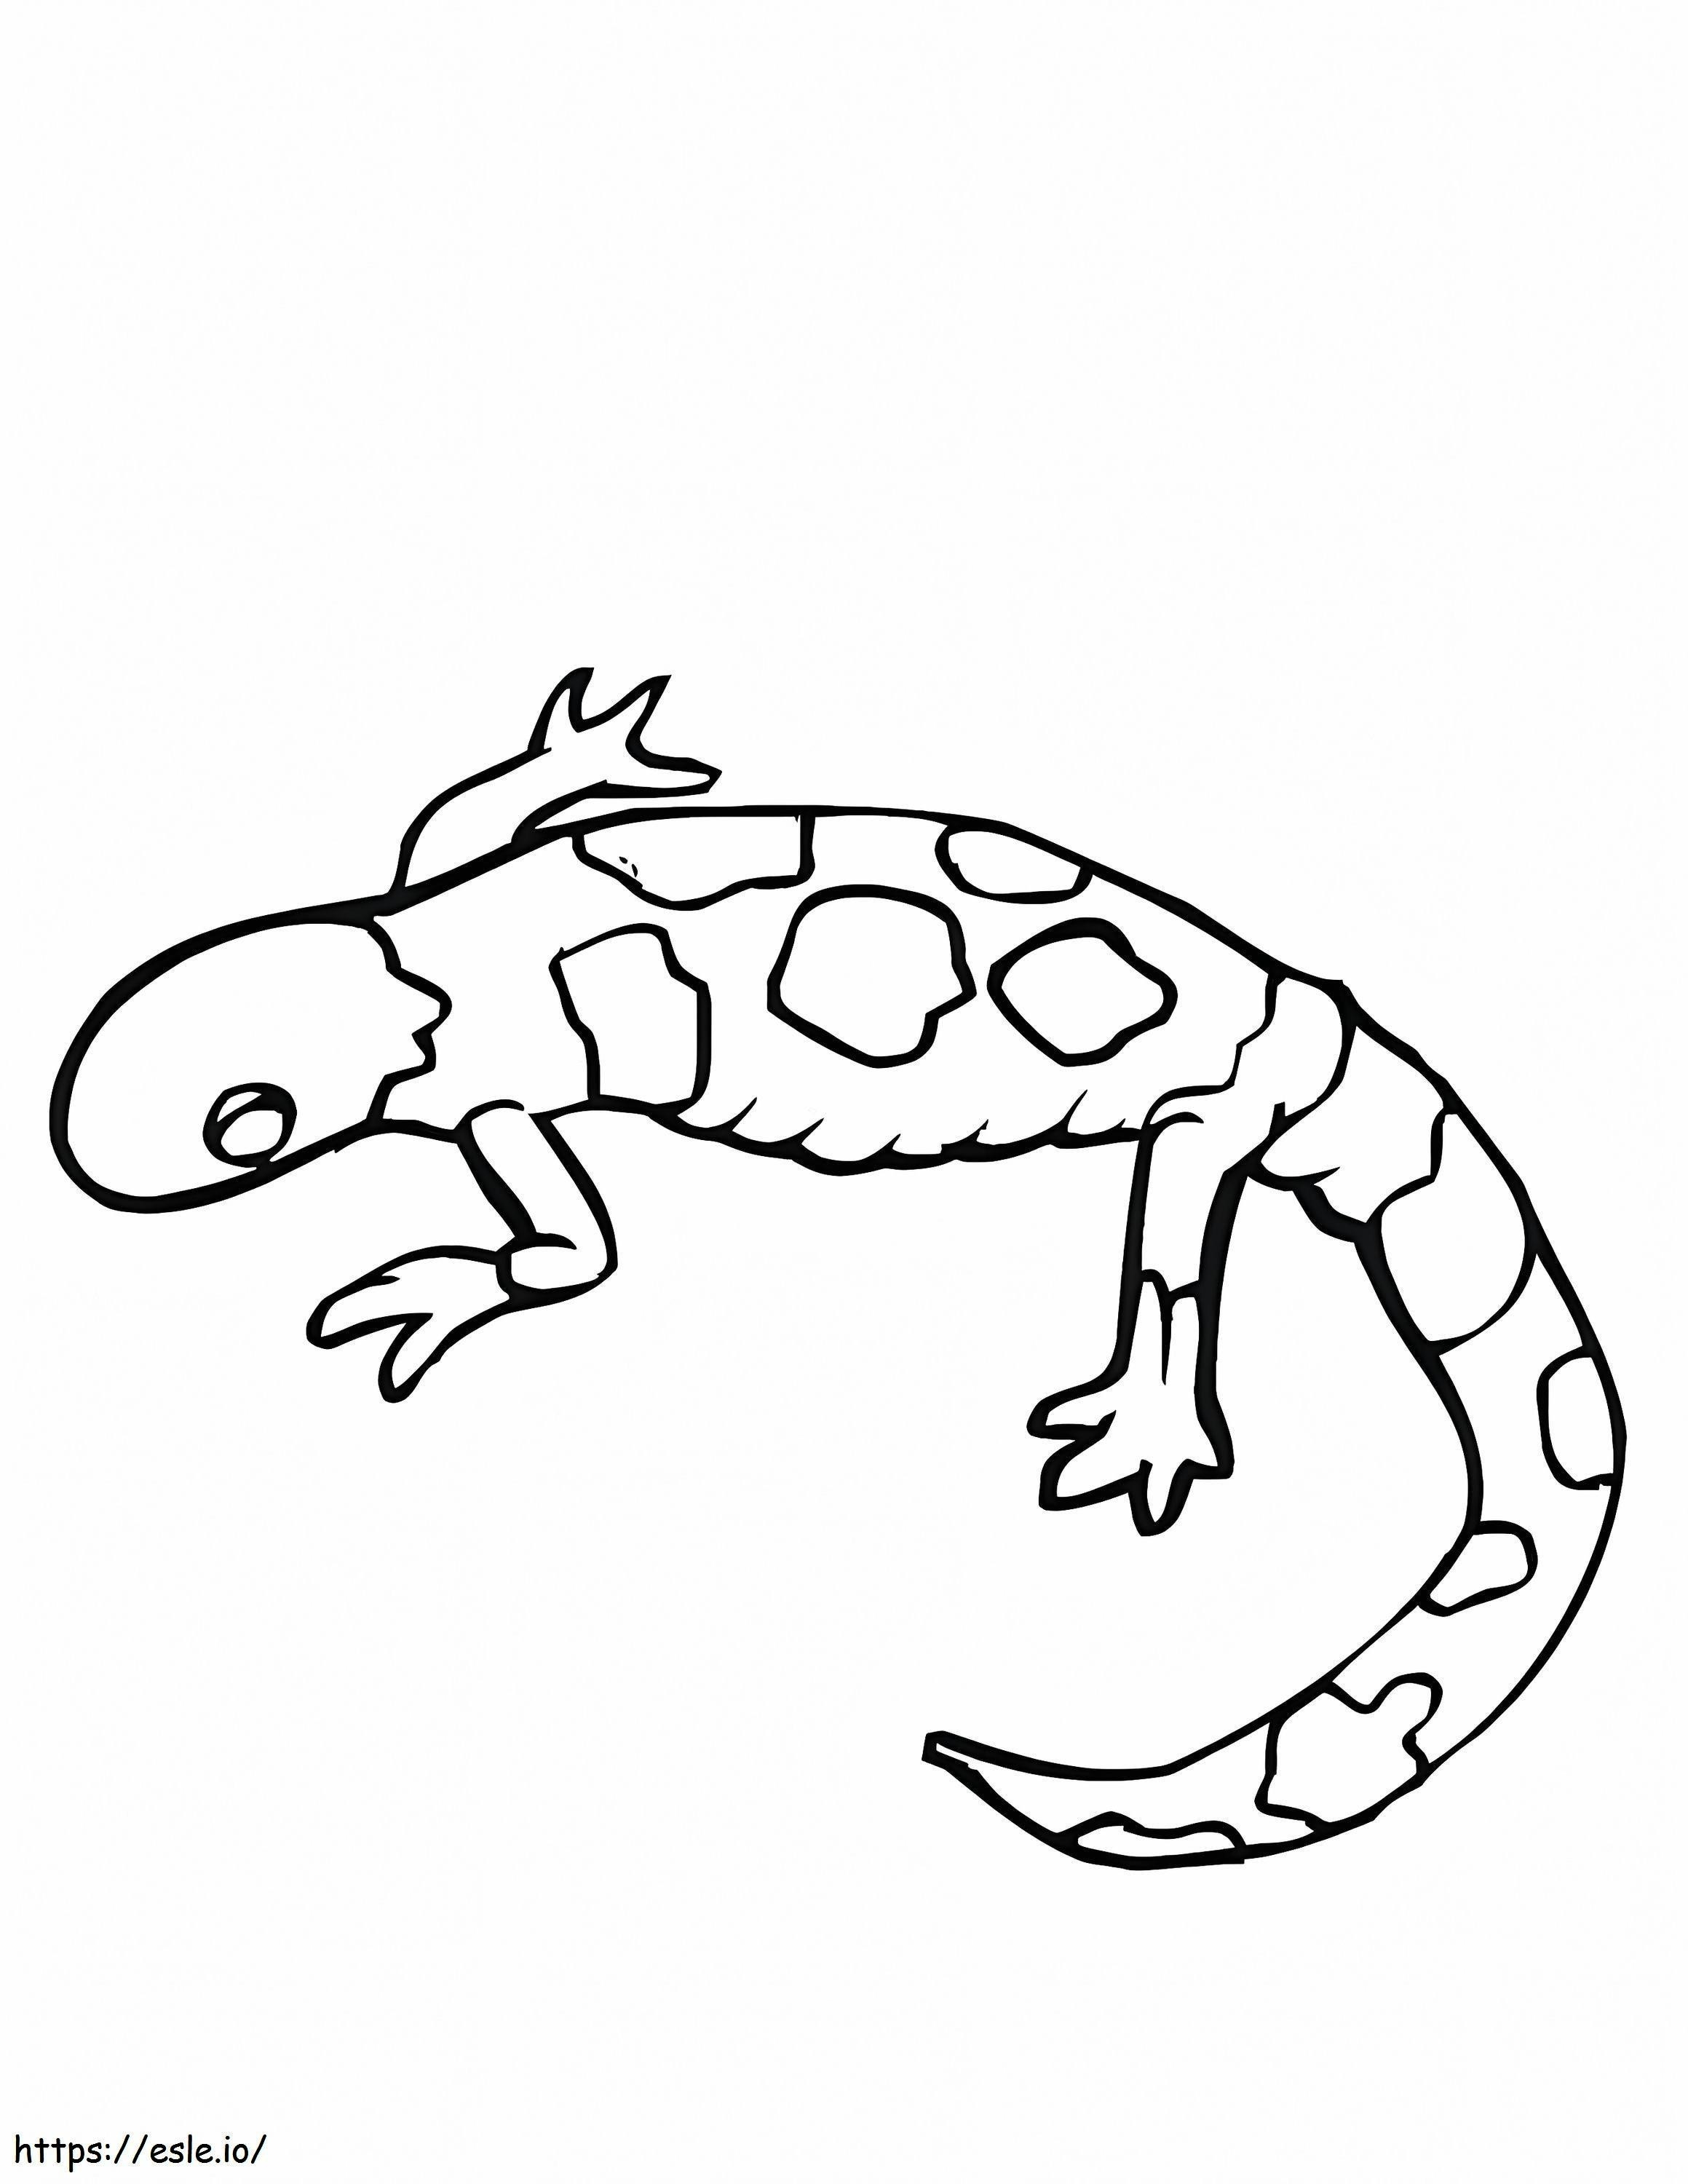 Imagini gratuite de Gecko de colorat